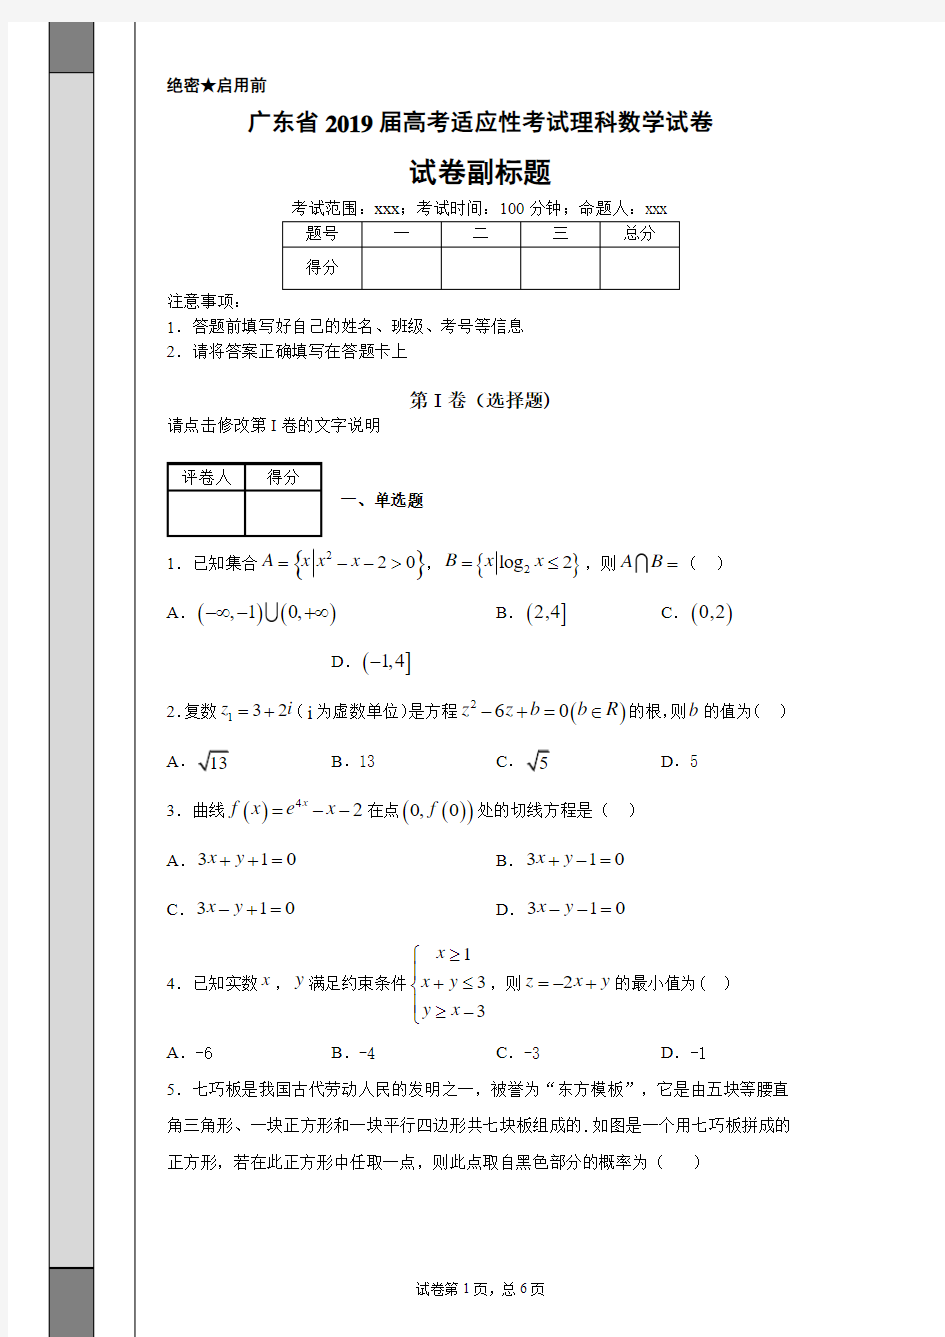 广东省2019届高考适应性考试理科数学试卷-74b61d5f8e0d4af68c02b8f015b7586a